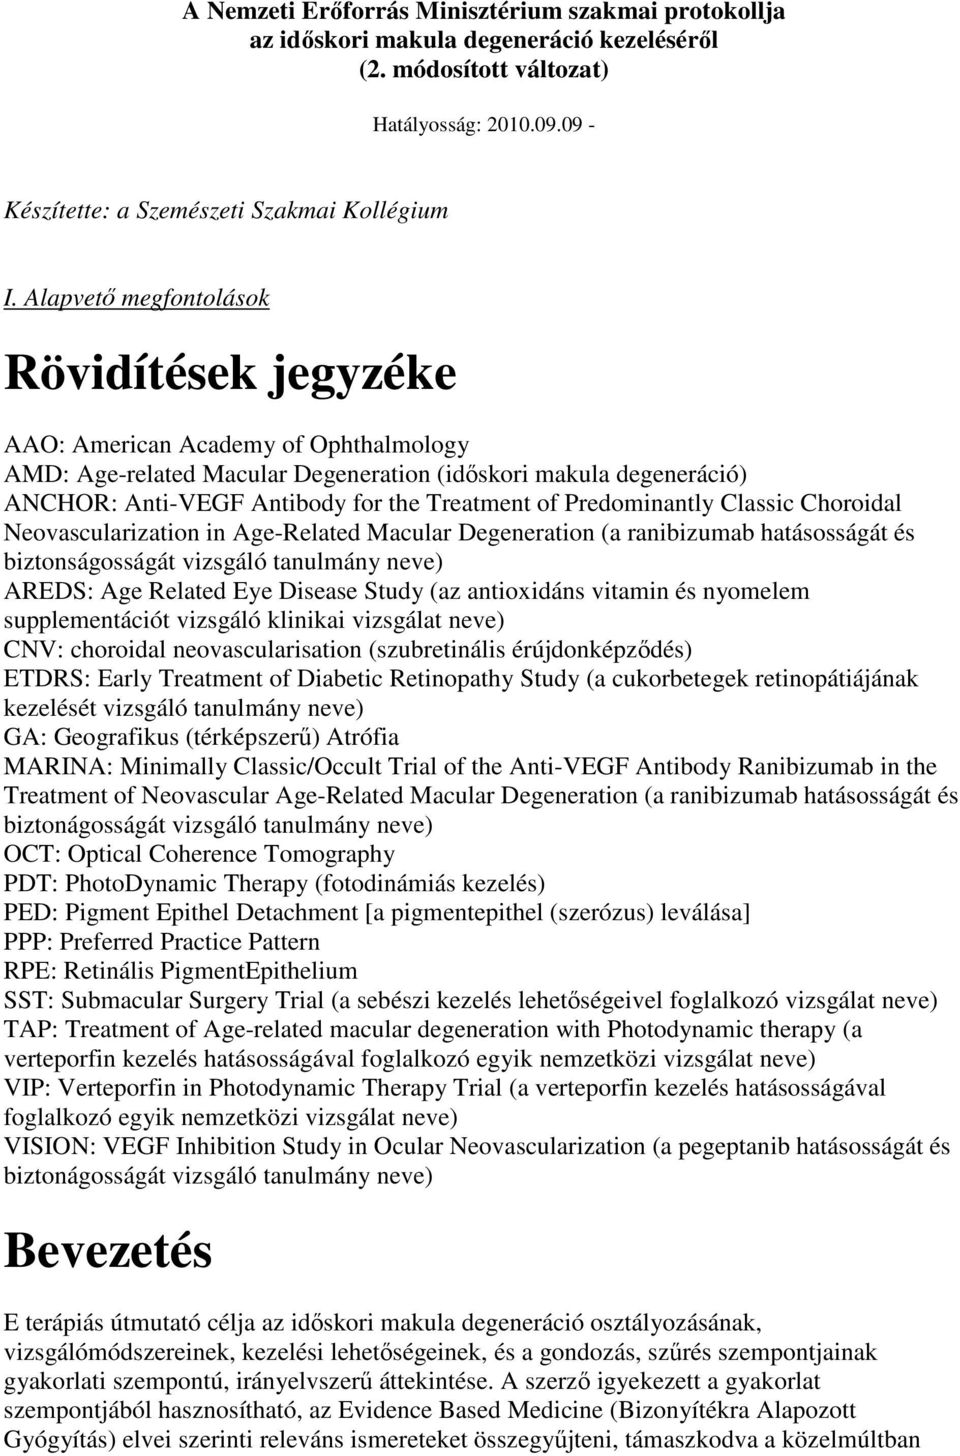 A Nemzeti Erıforrás Minisztérium szakmai protokollja az idıskori makula  degeneráció kezelésérıl (2. módosított változat) Hatályosság: - PDF Free  Download